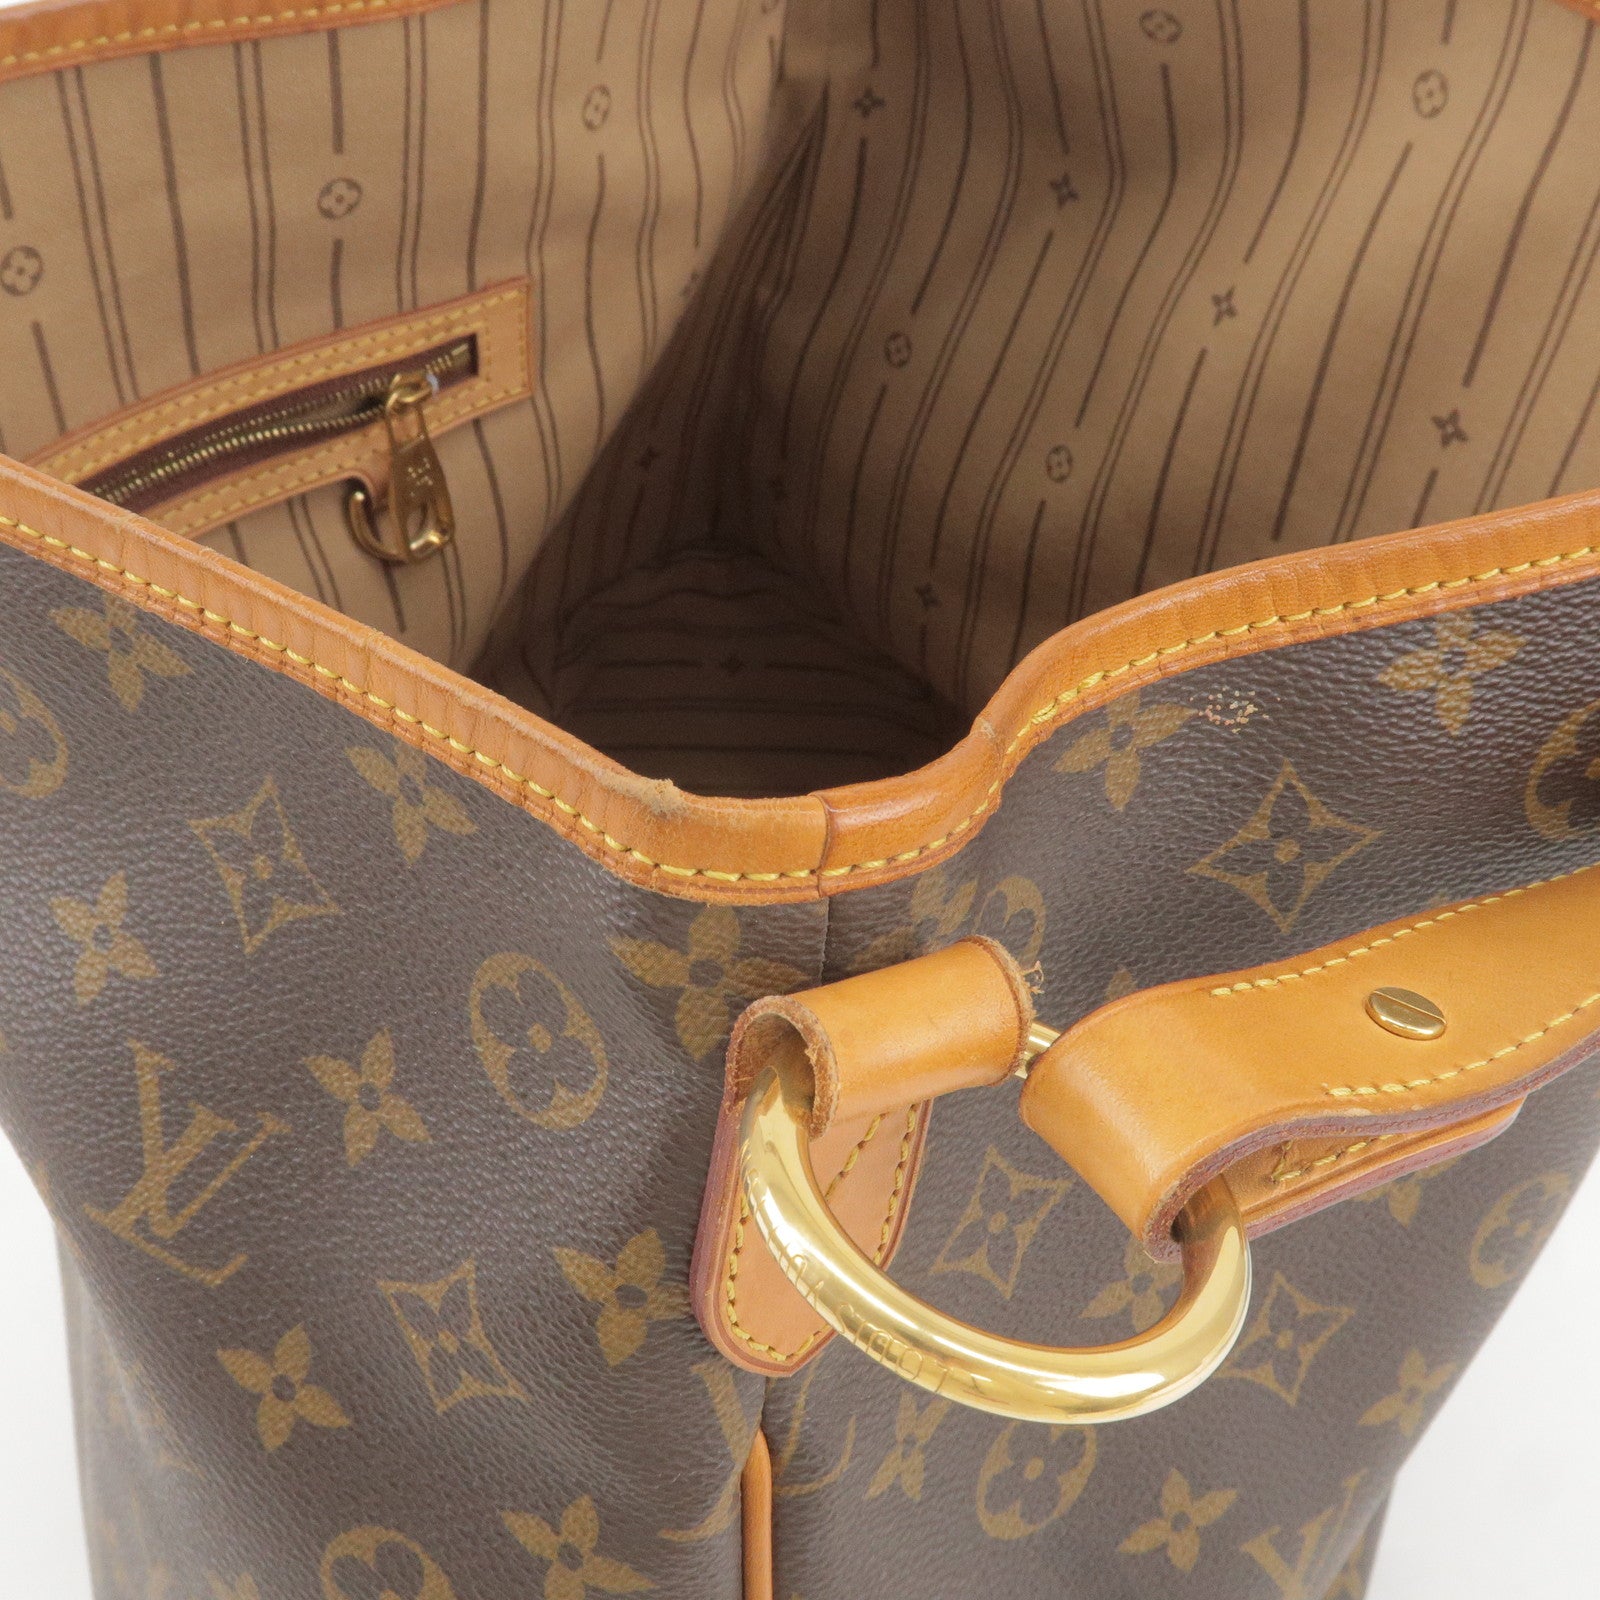 Louis Vuitton Delightful DE Review & Comparison to old model 